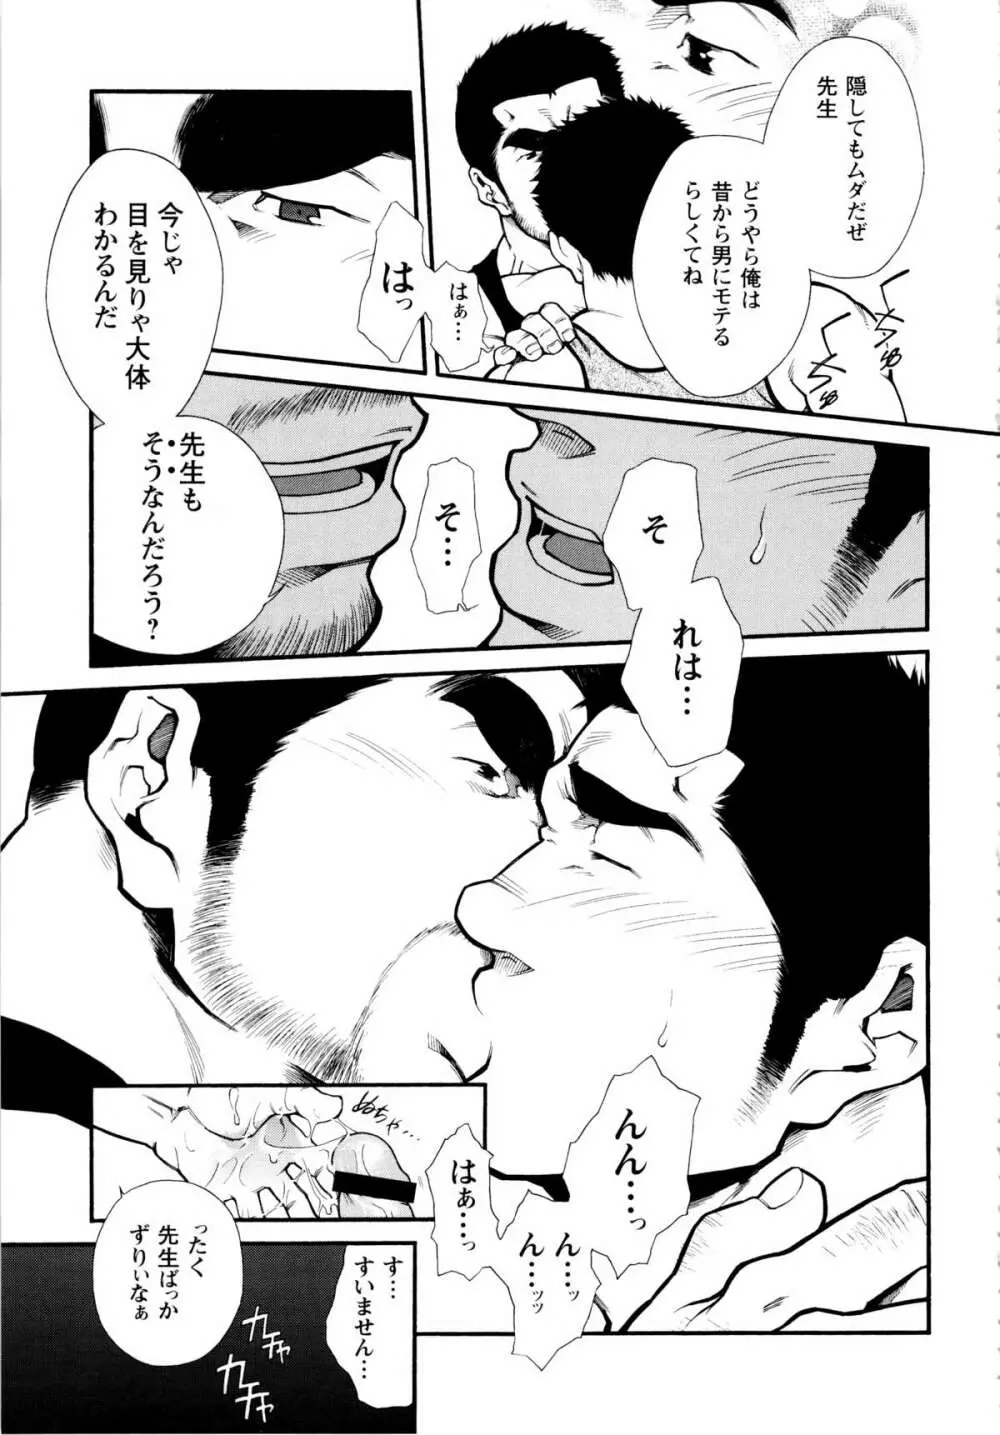 Osu Hachi no Mitsu – by -晃次郎 (Terujirou) 15ページ